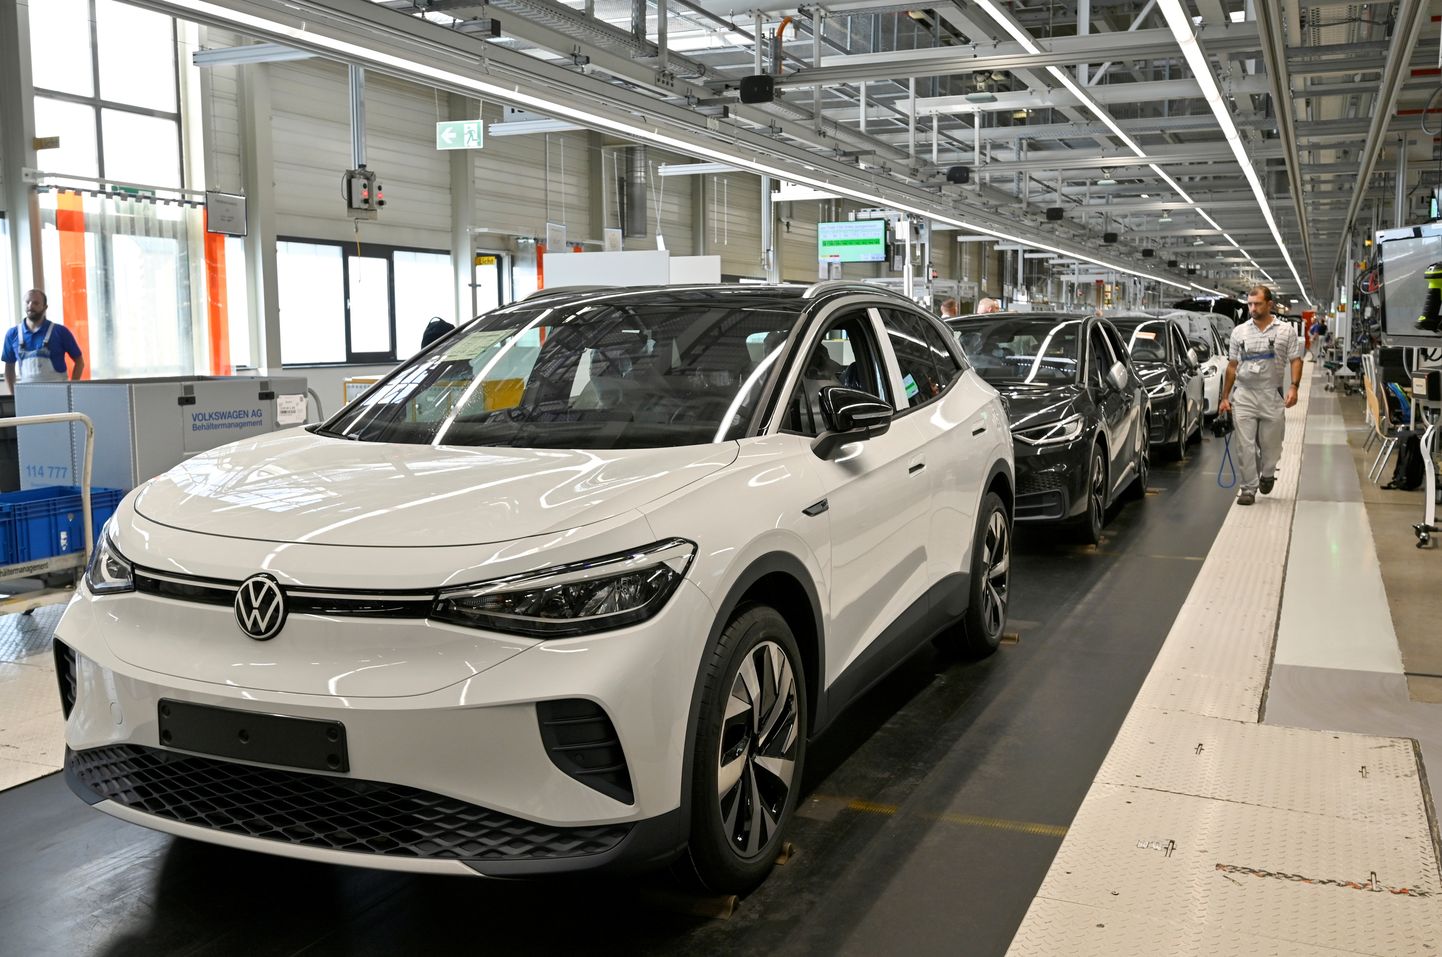 Volkswagen elab mikrokiipide defitsiiti raskelt üle. Pildil Volkswageni tootmisliin.